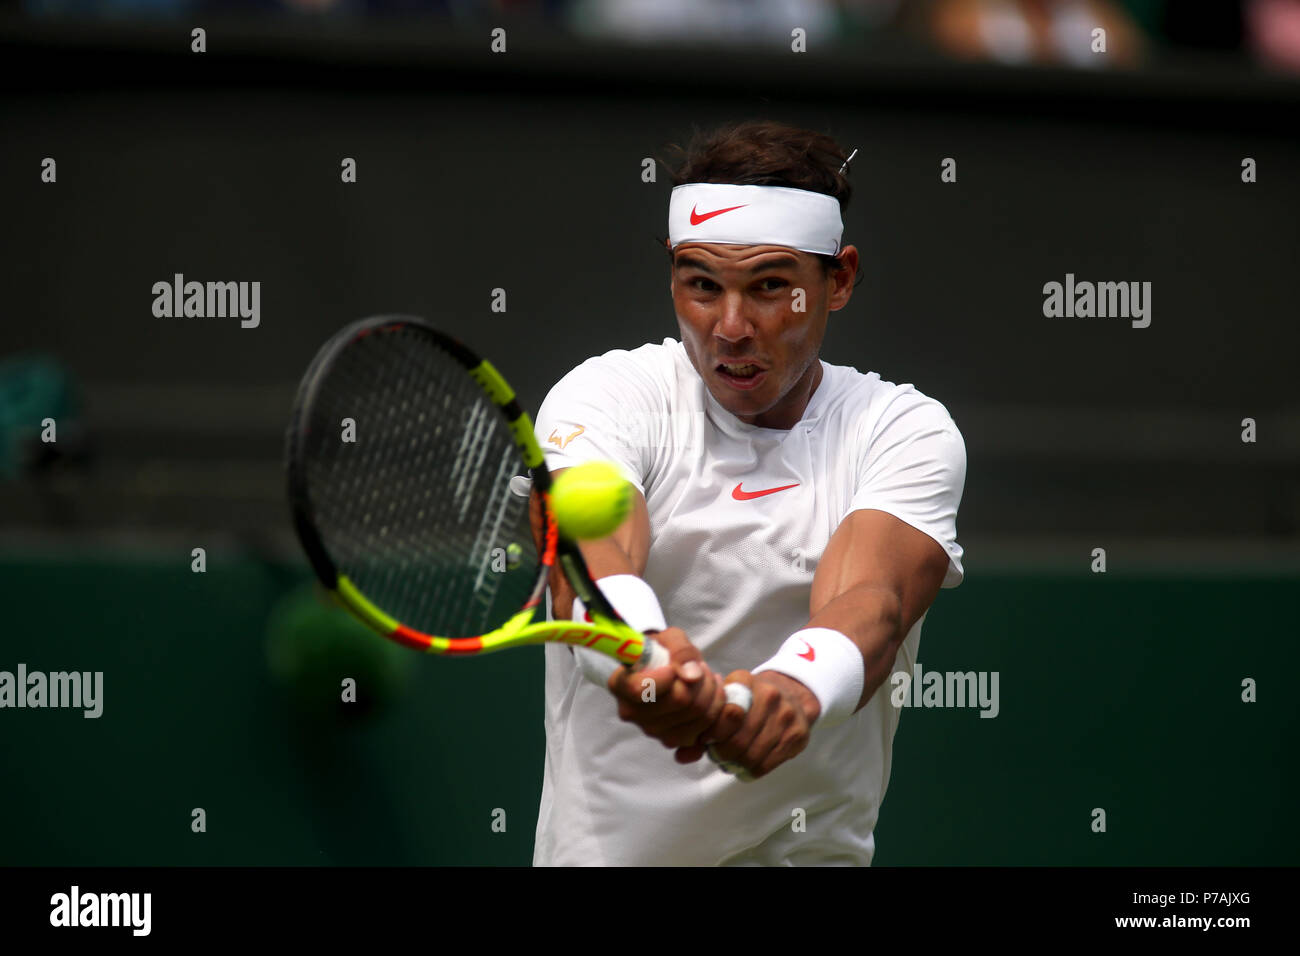 Londres, Inglaterra - 5 de julio de 2018. Tenis Wimbledon: Rafael Nadal de España durante su segunda ronda partido contra Mikhail Kukushkin de Kazajstán. Crédito: Adam Stoltman/Alamy Live News Foto de stock